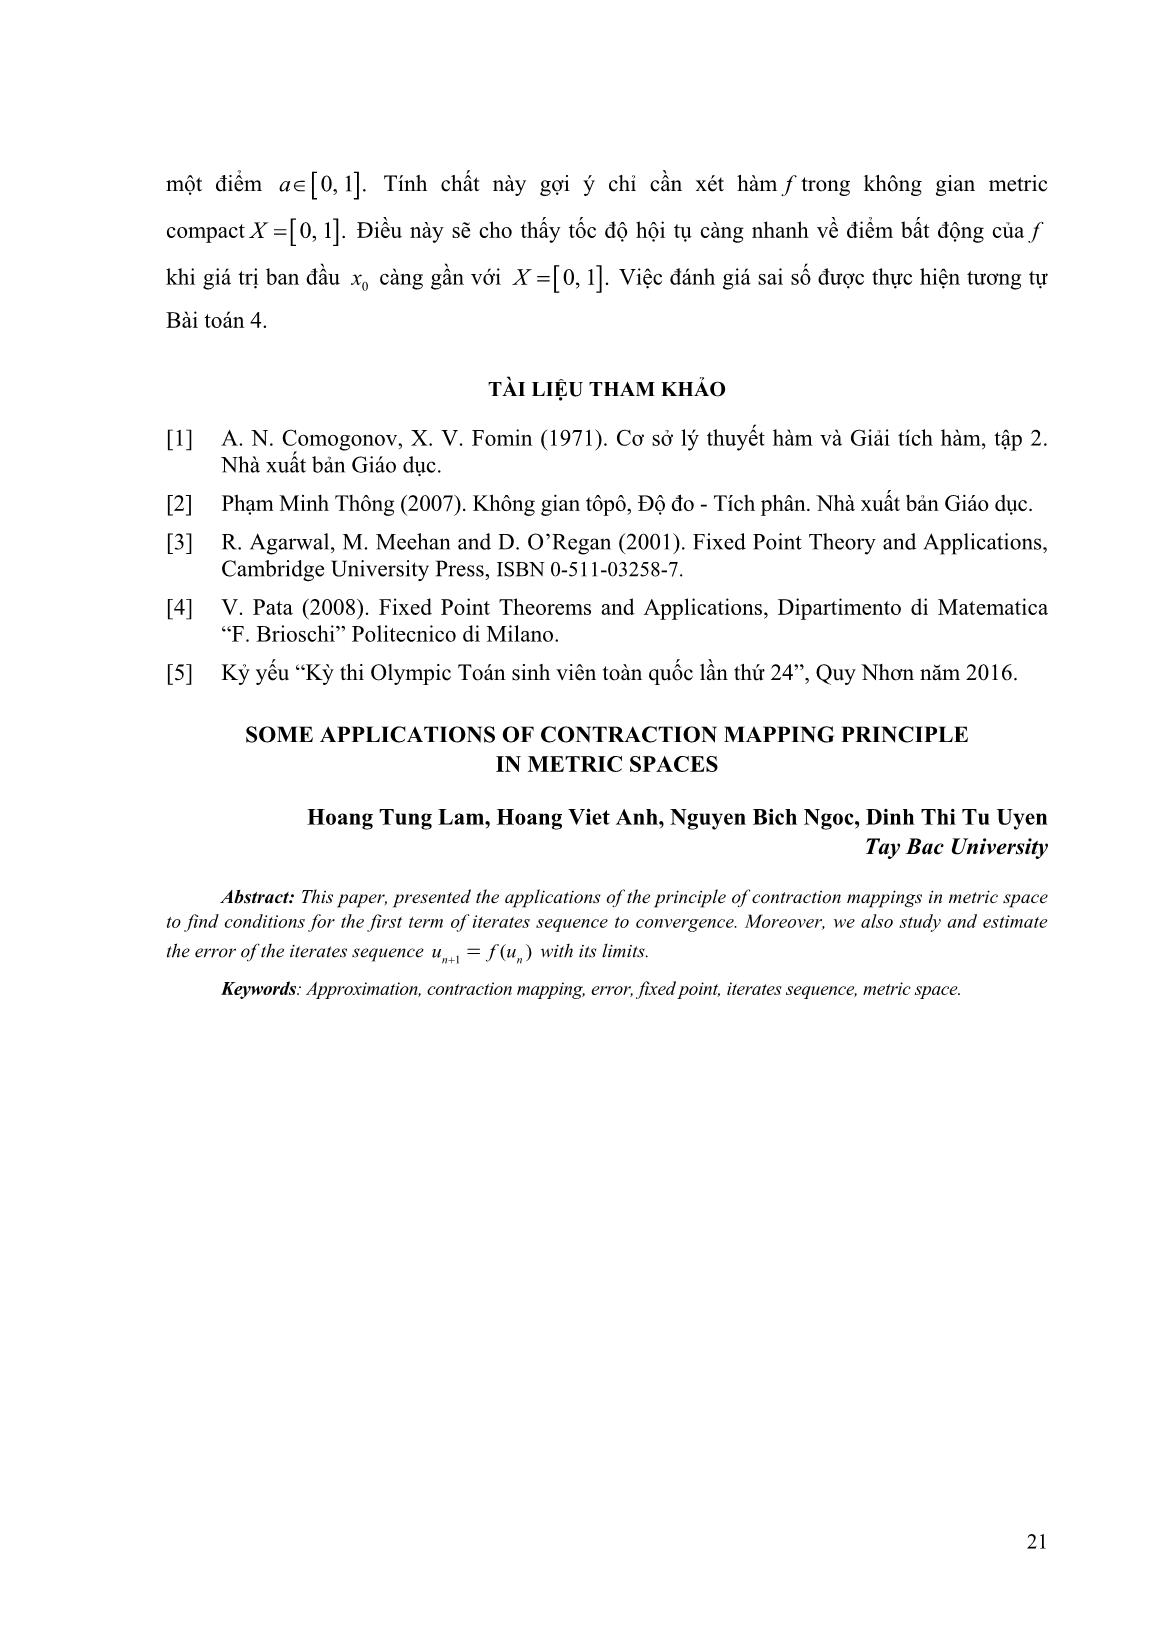 Một số ứng dụng của nguyên lý ánh xạ co trong không gian Metric trang 8